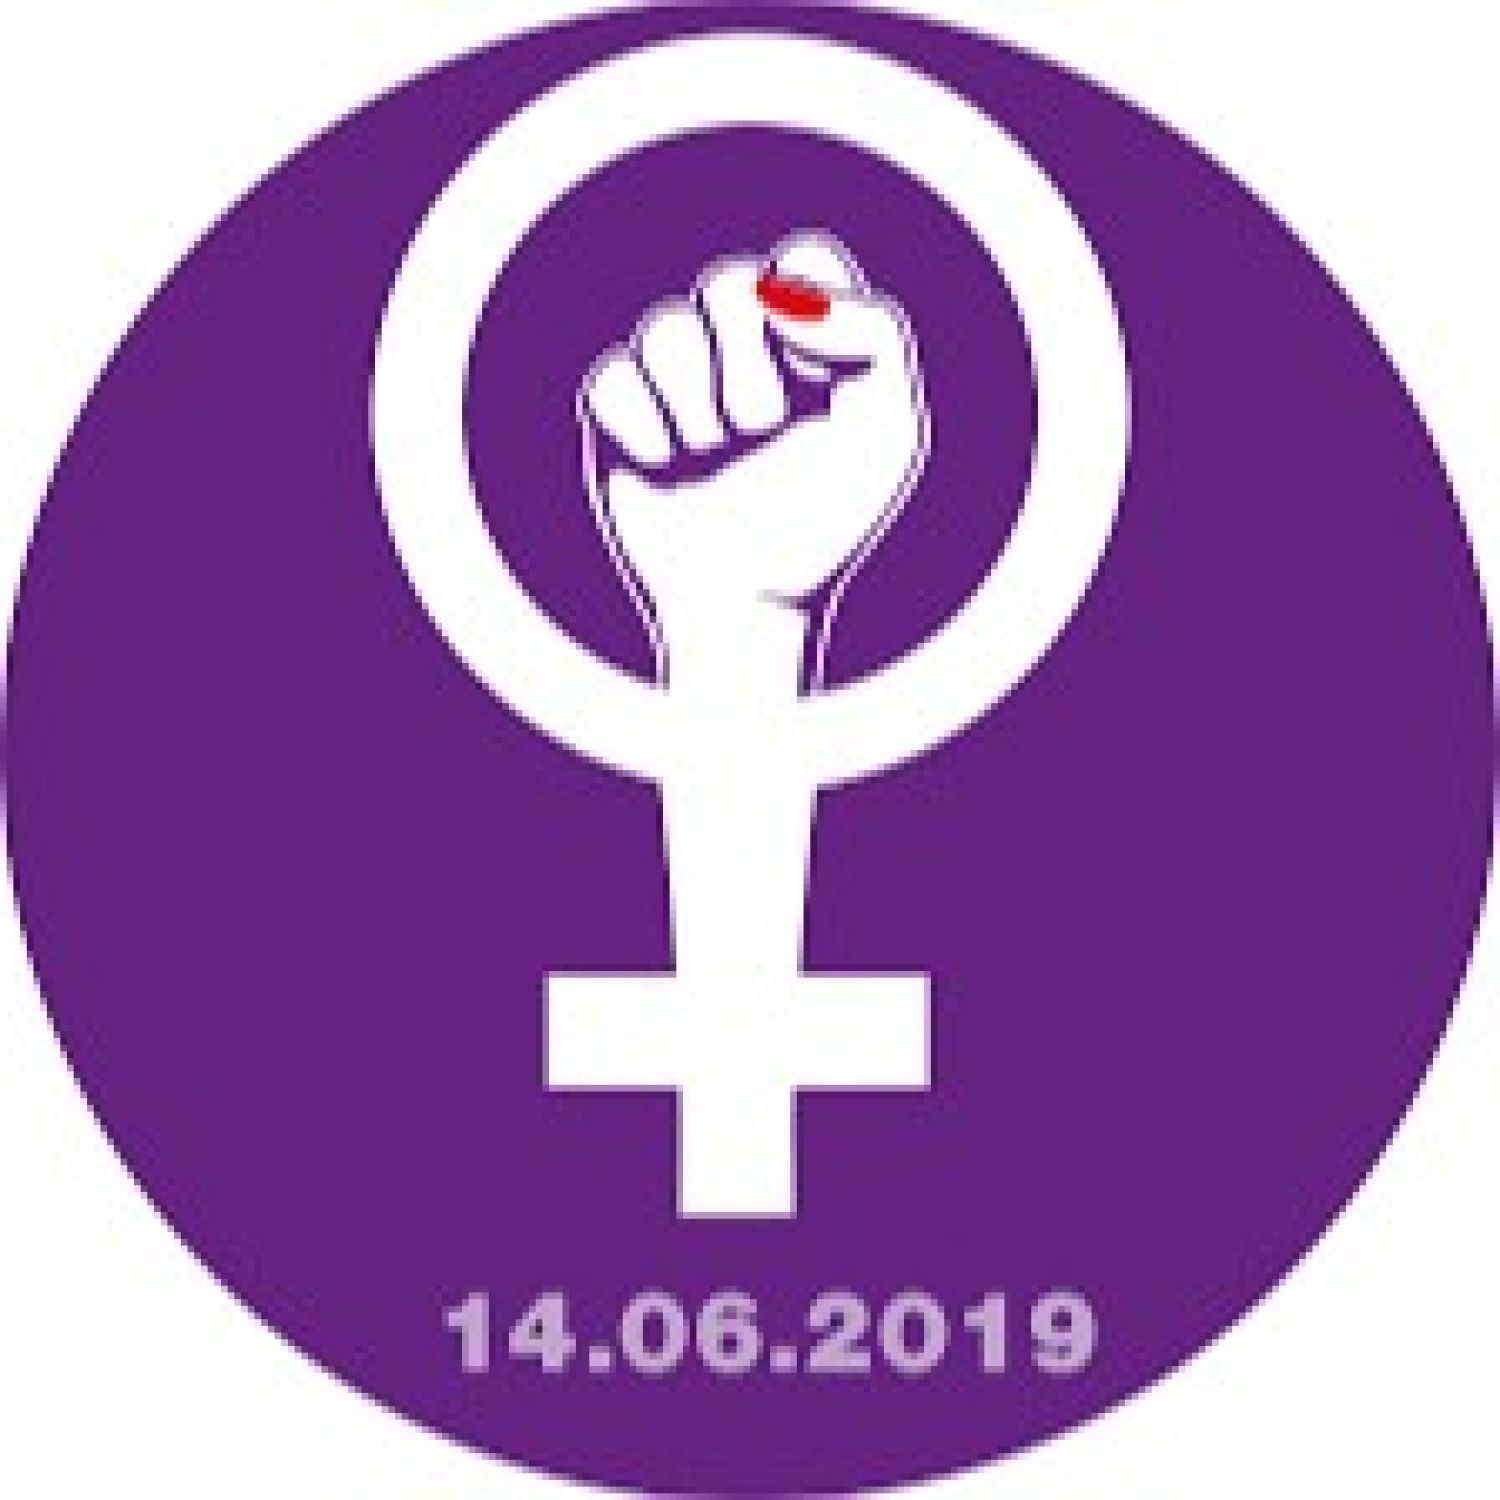 Le PS-Hauterive organise un stand pour soutenir la Grève des femmes